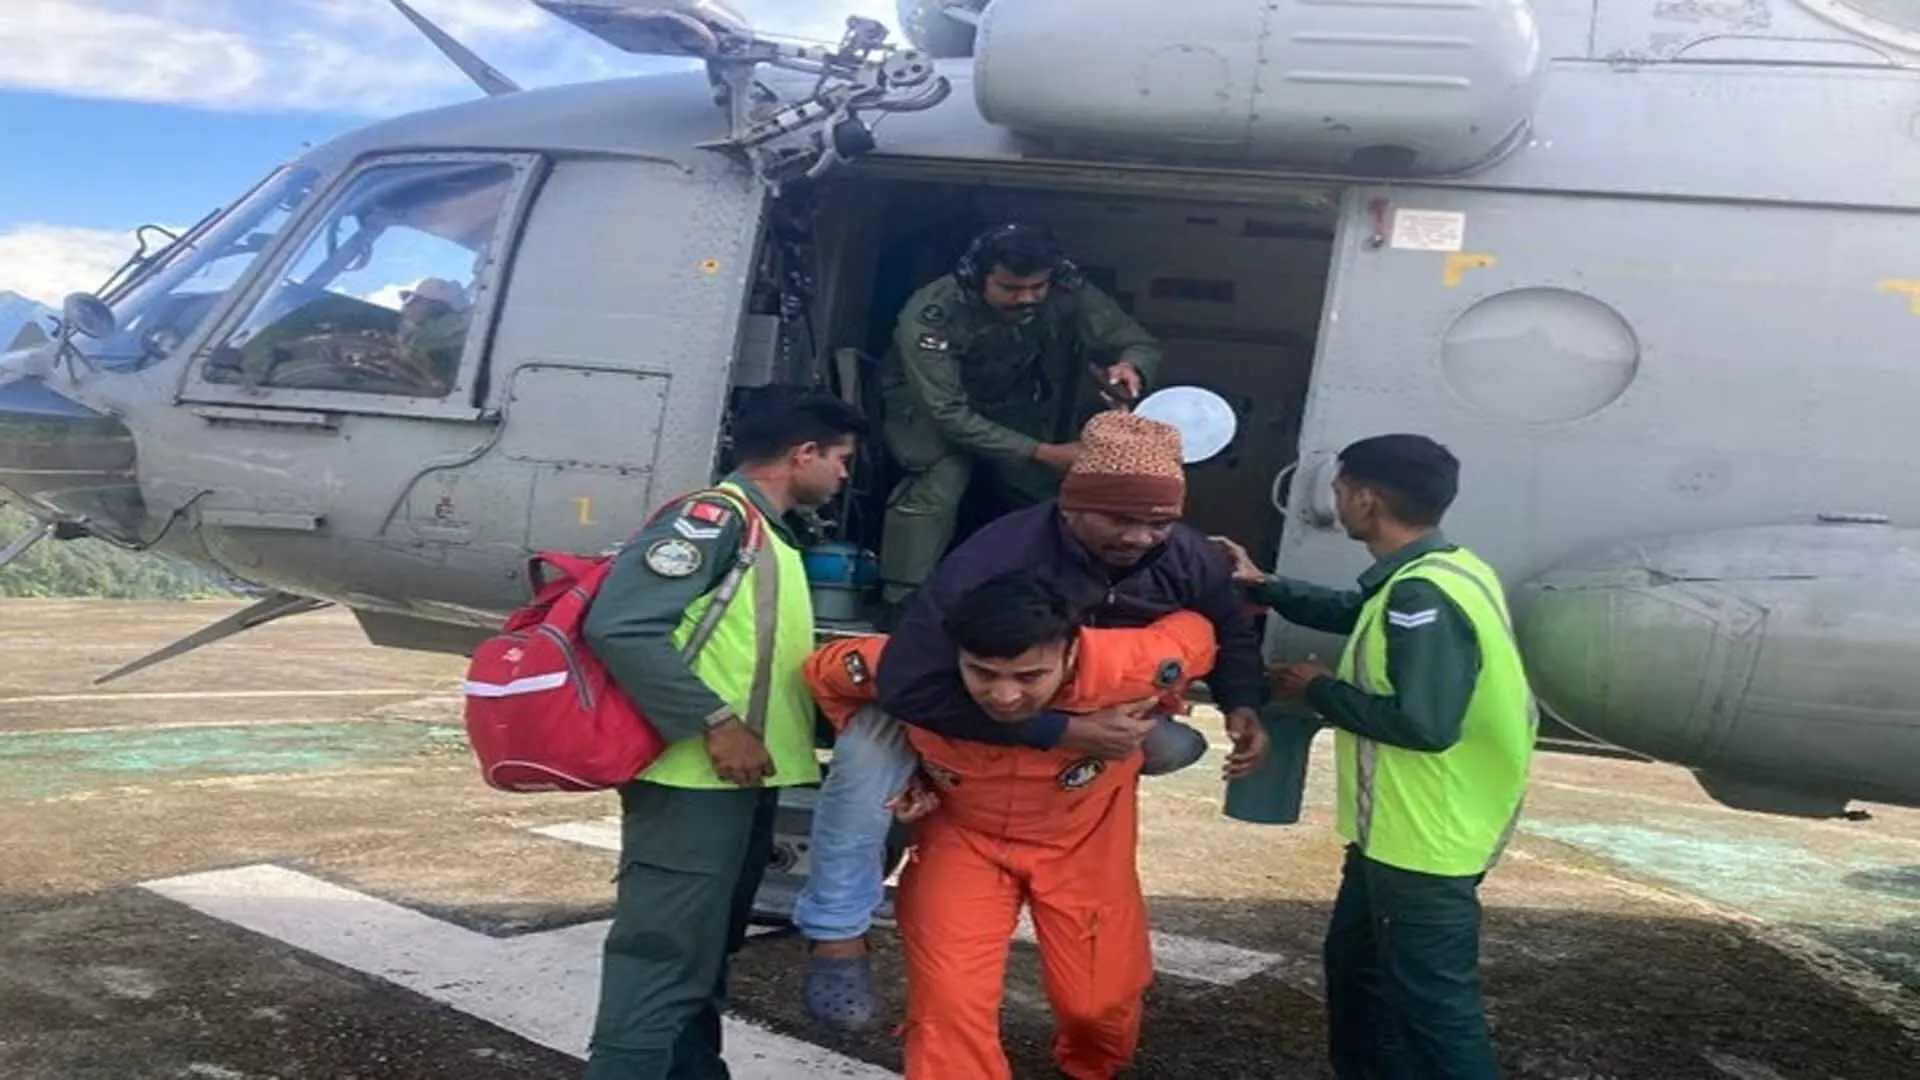 Indian वायुसेना ने केदारनाथ घाटी से 17 NDRF कर्मियों सहित 201 लोगों को सुरक्षित पहुंचाया